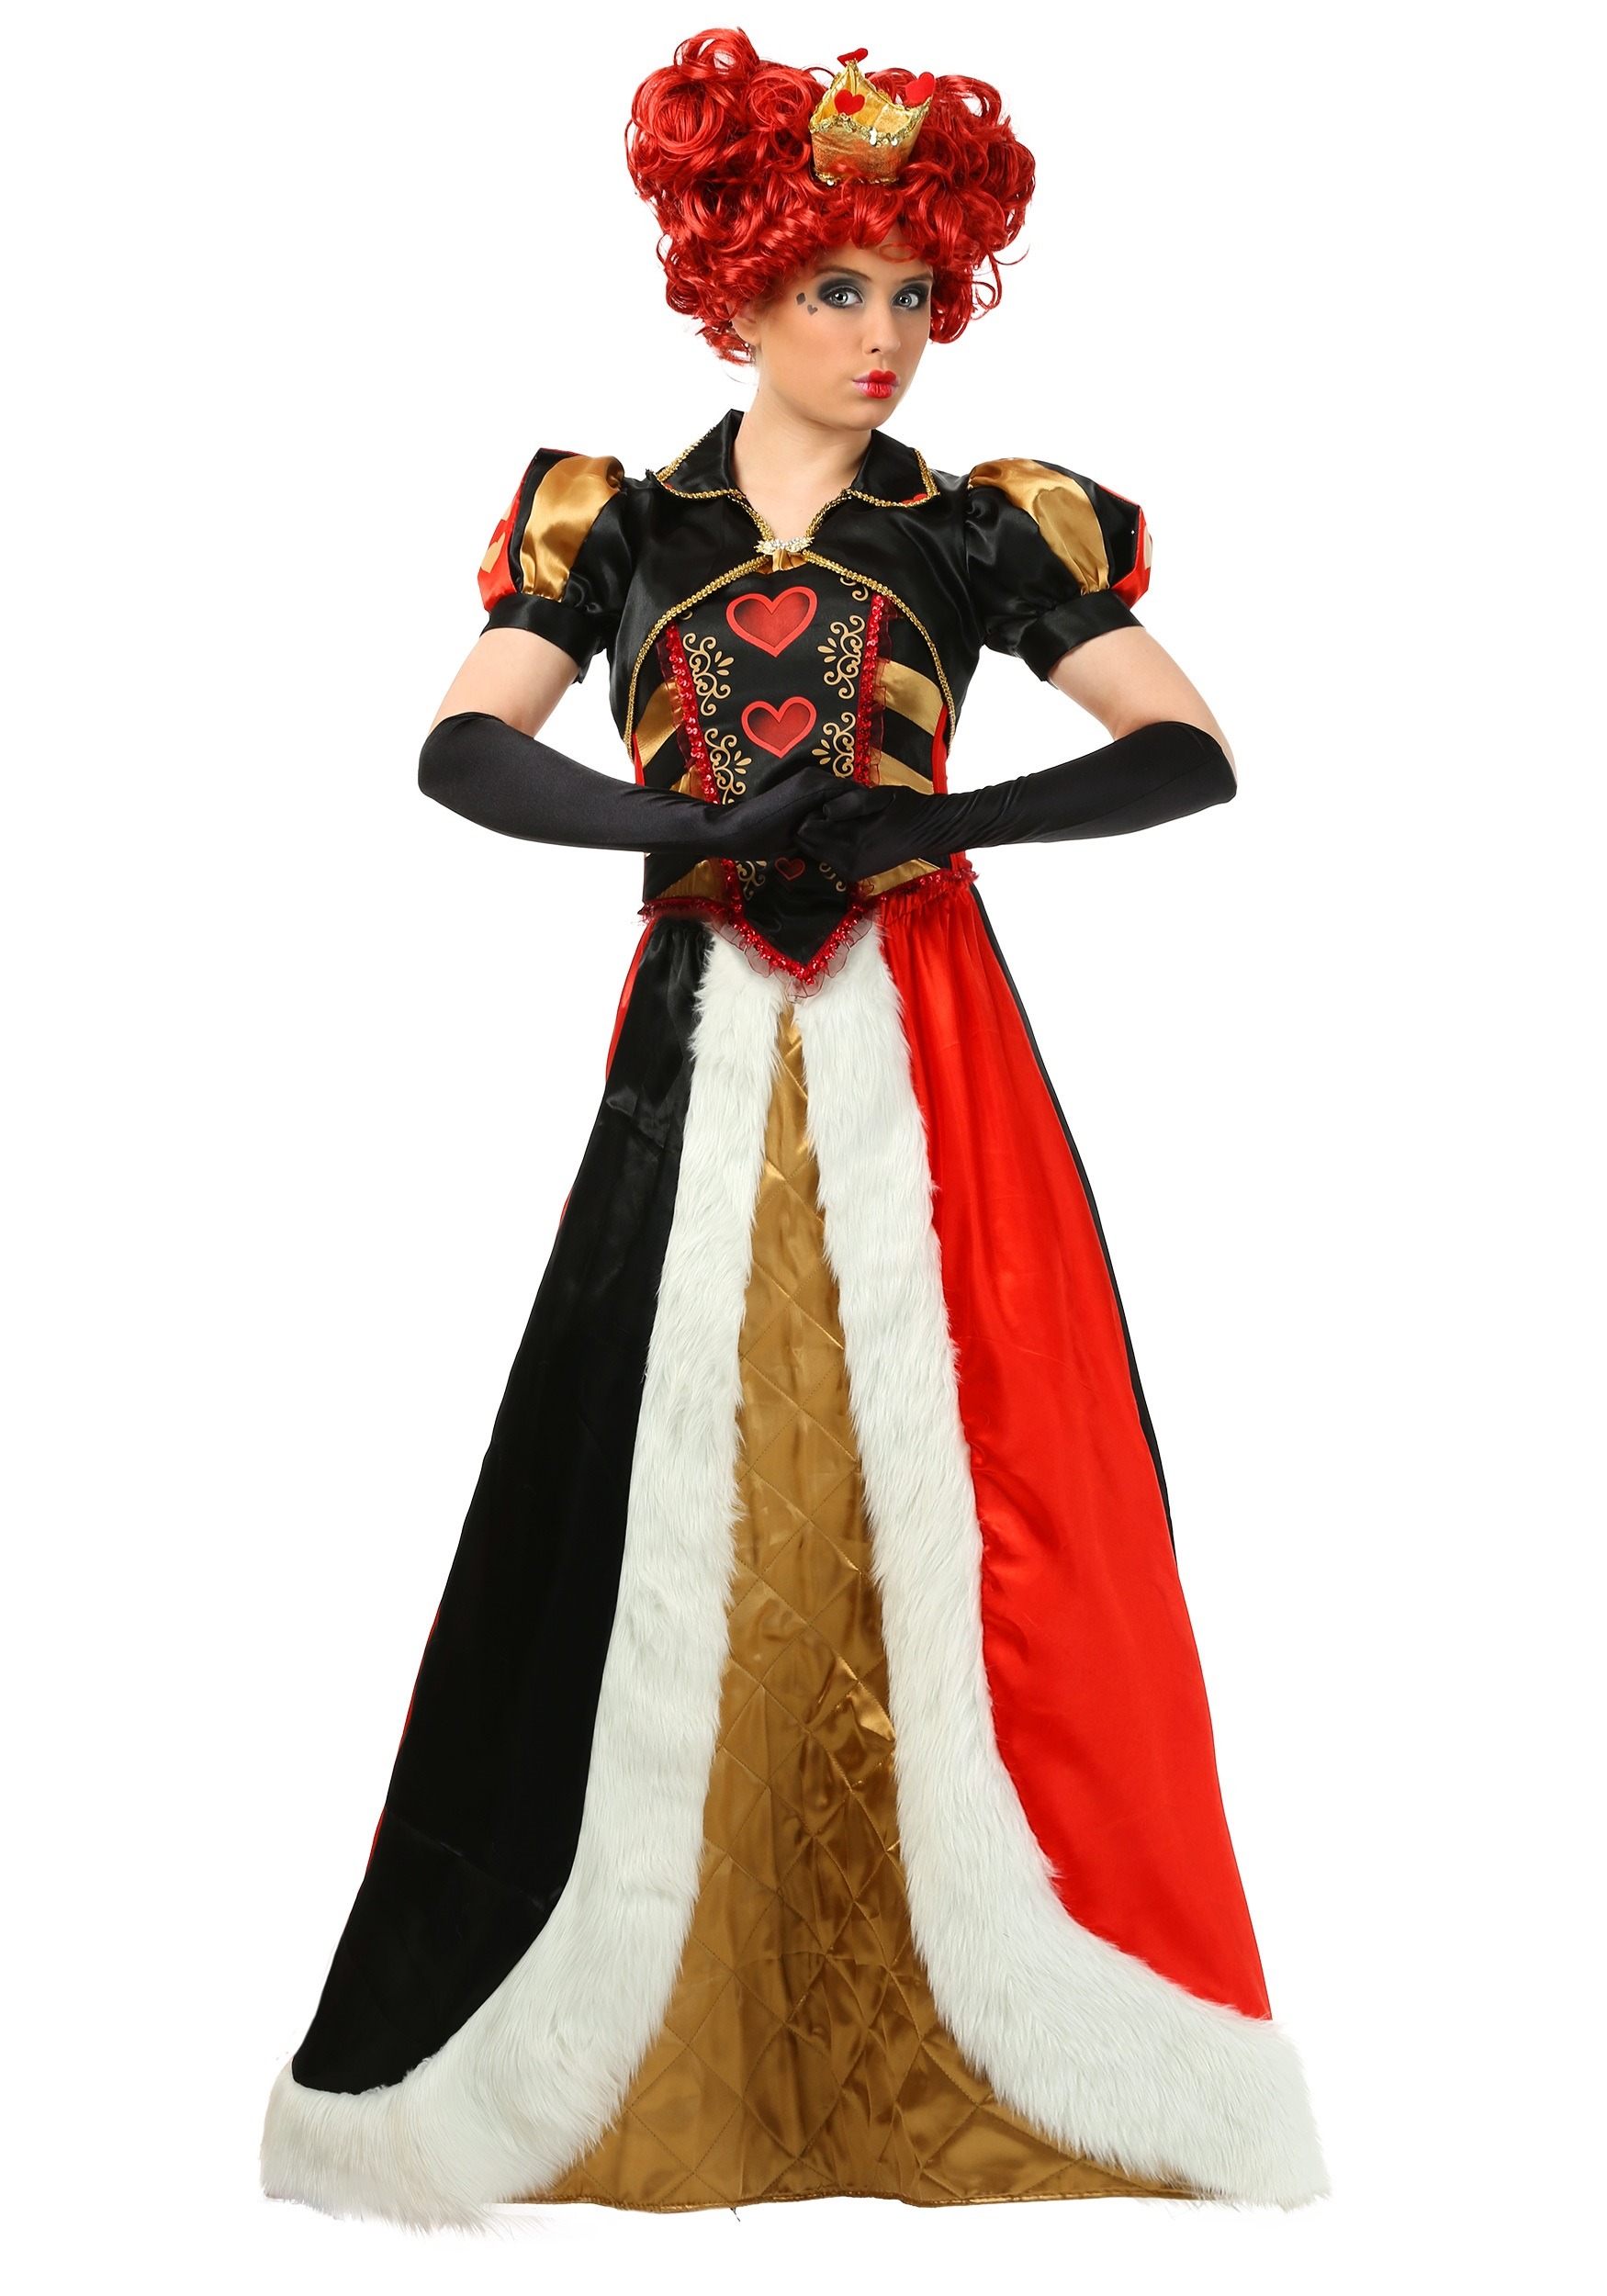 Women's Elite Queen of Hearts Costume - DeluxeAdultCostumes.com